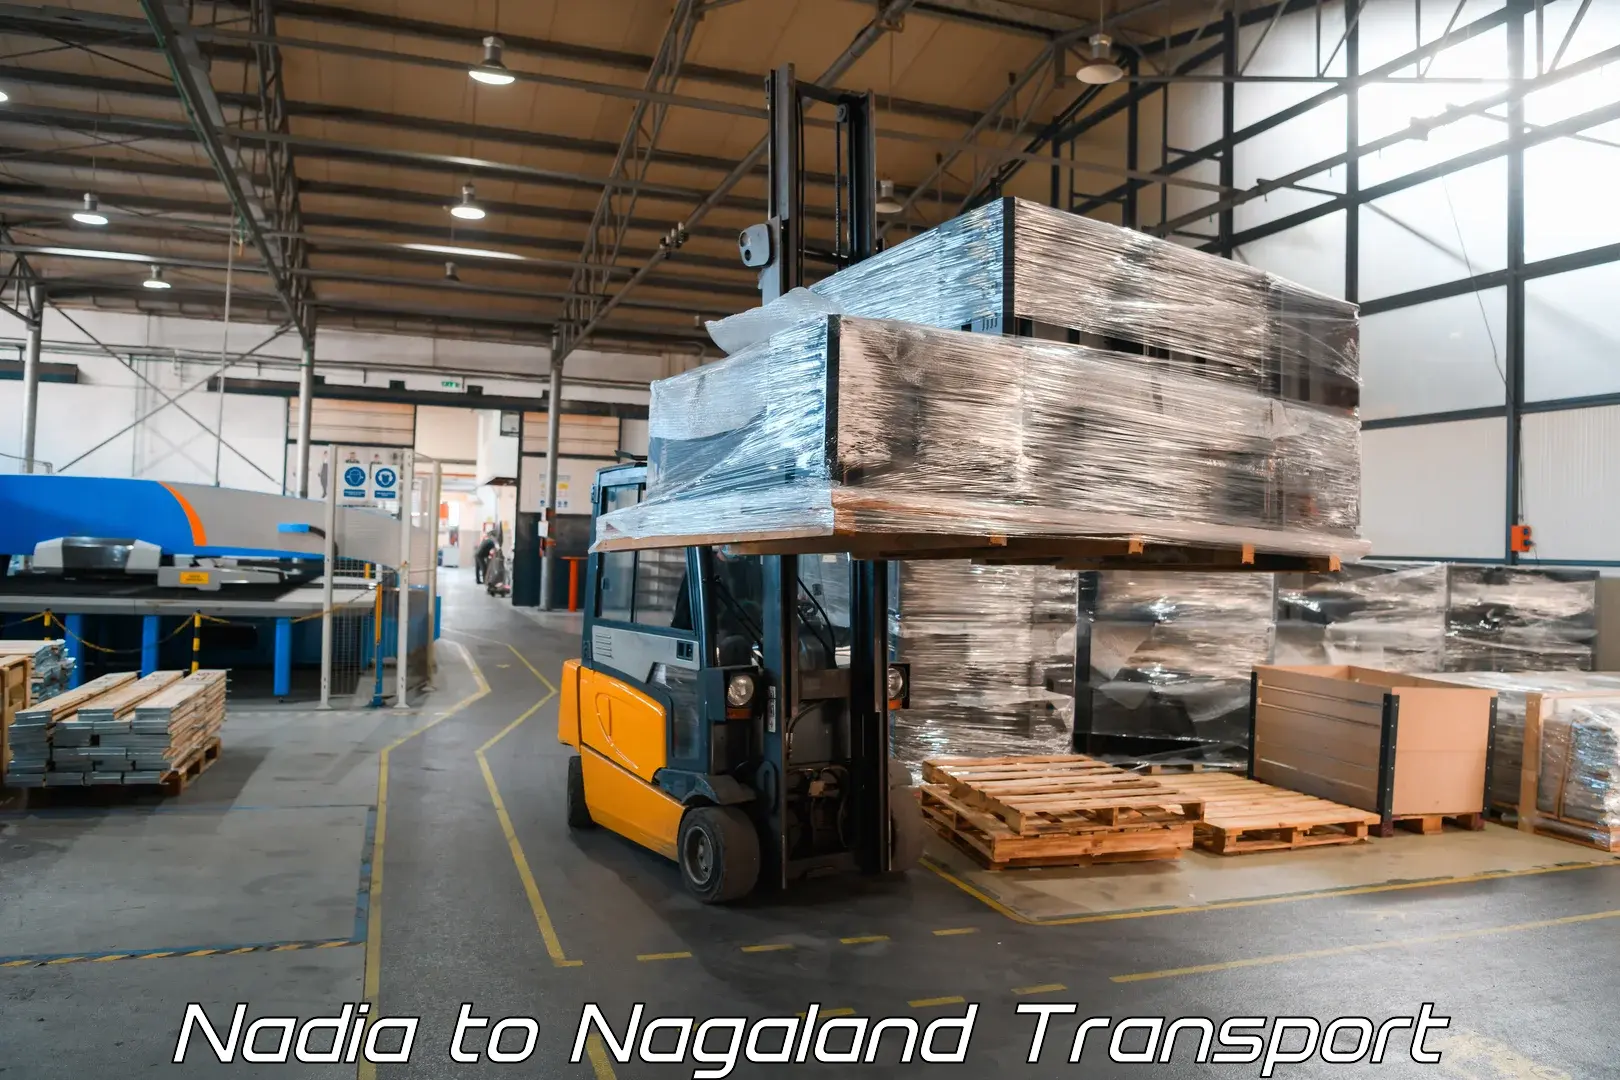 Shipping services Nadia to Nagaland